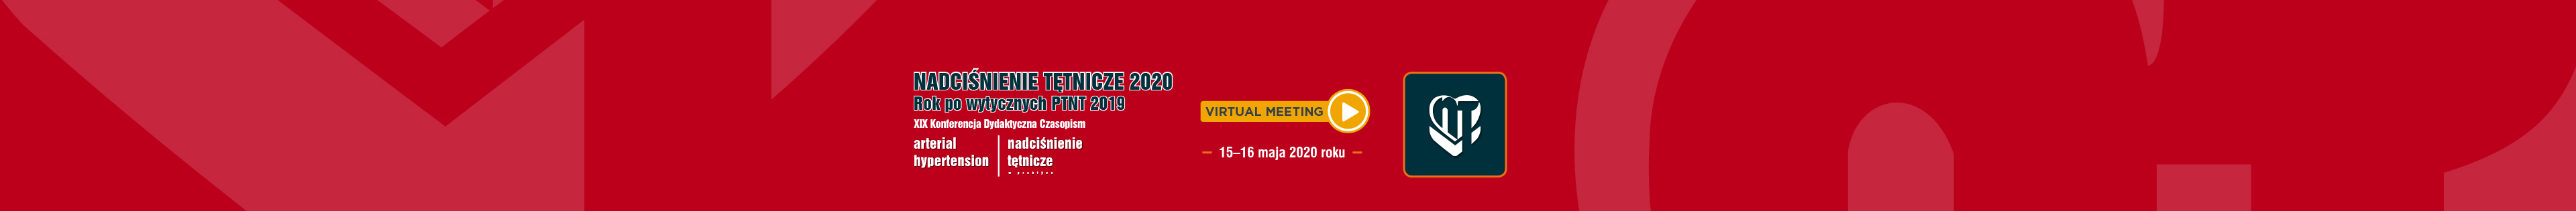 Nadciśnienie tętnicze 2020 - Rok po wytycznych PTNT 2019 - XIX Konferencja Dydaktyczna Czasopism Arterial Hypertension i Nadciśnienie Tętnicze w Praktyce 